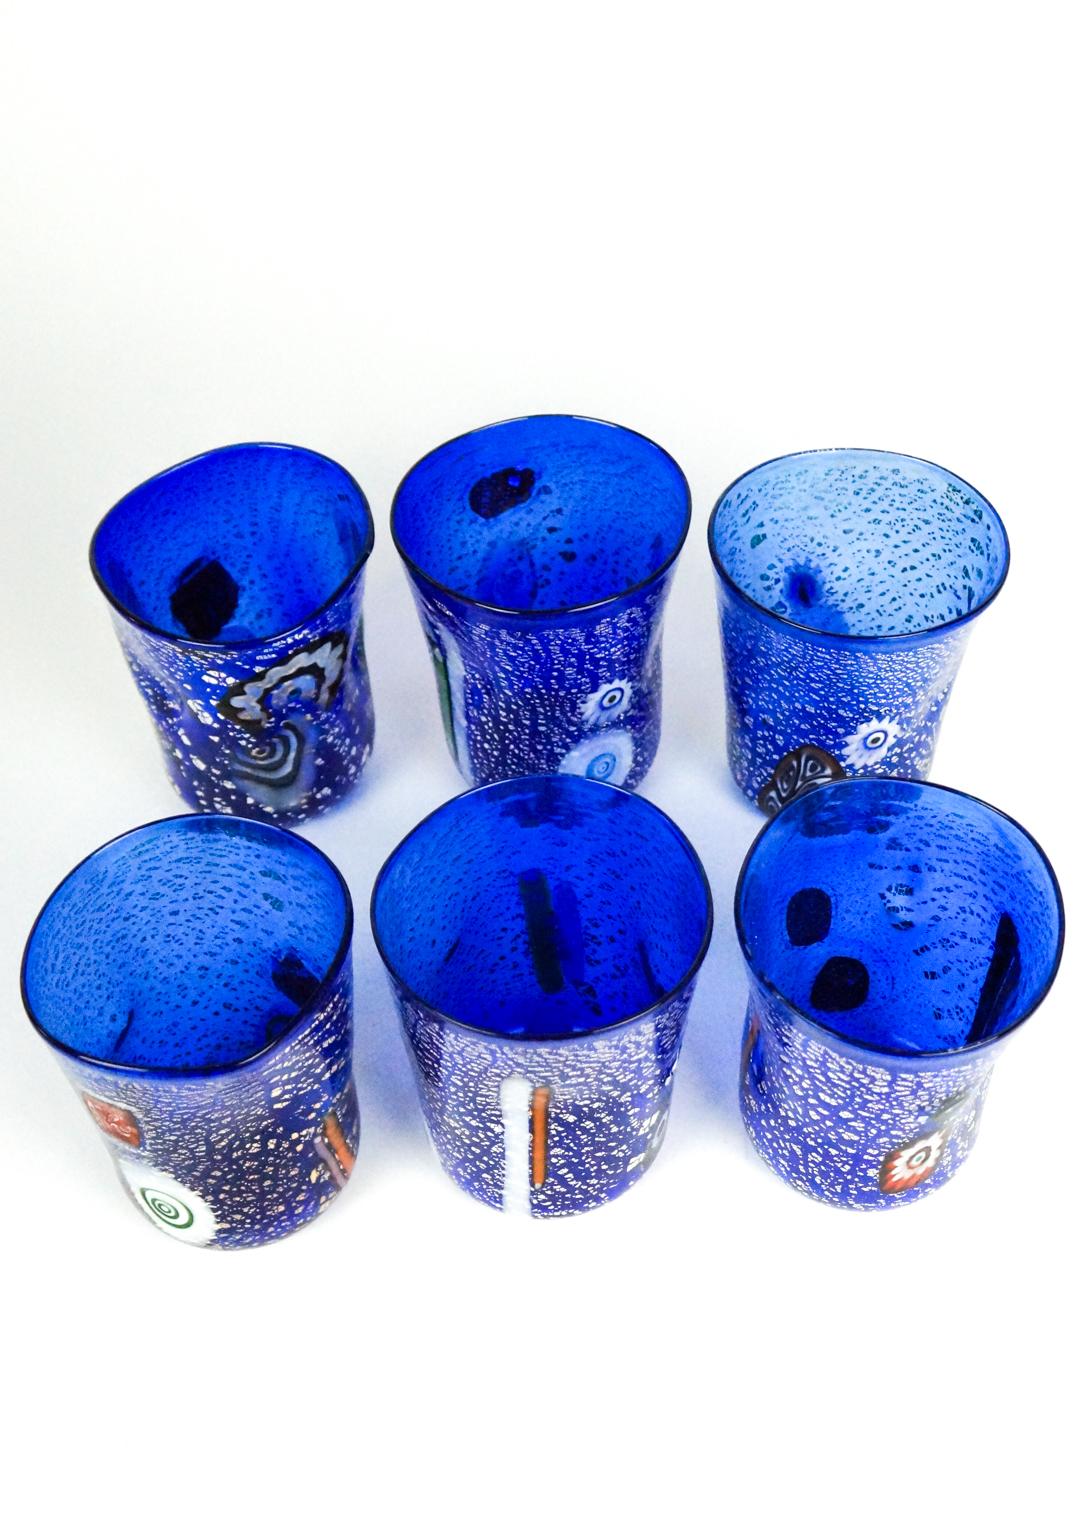 Prächtige Serie von 6 Murano Trinkgläsern.
Dieses Set heißt 